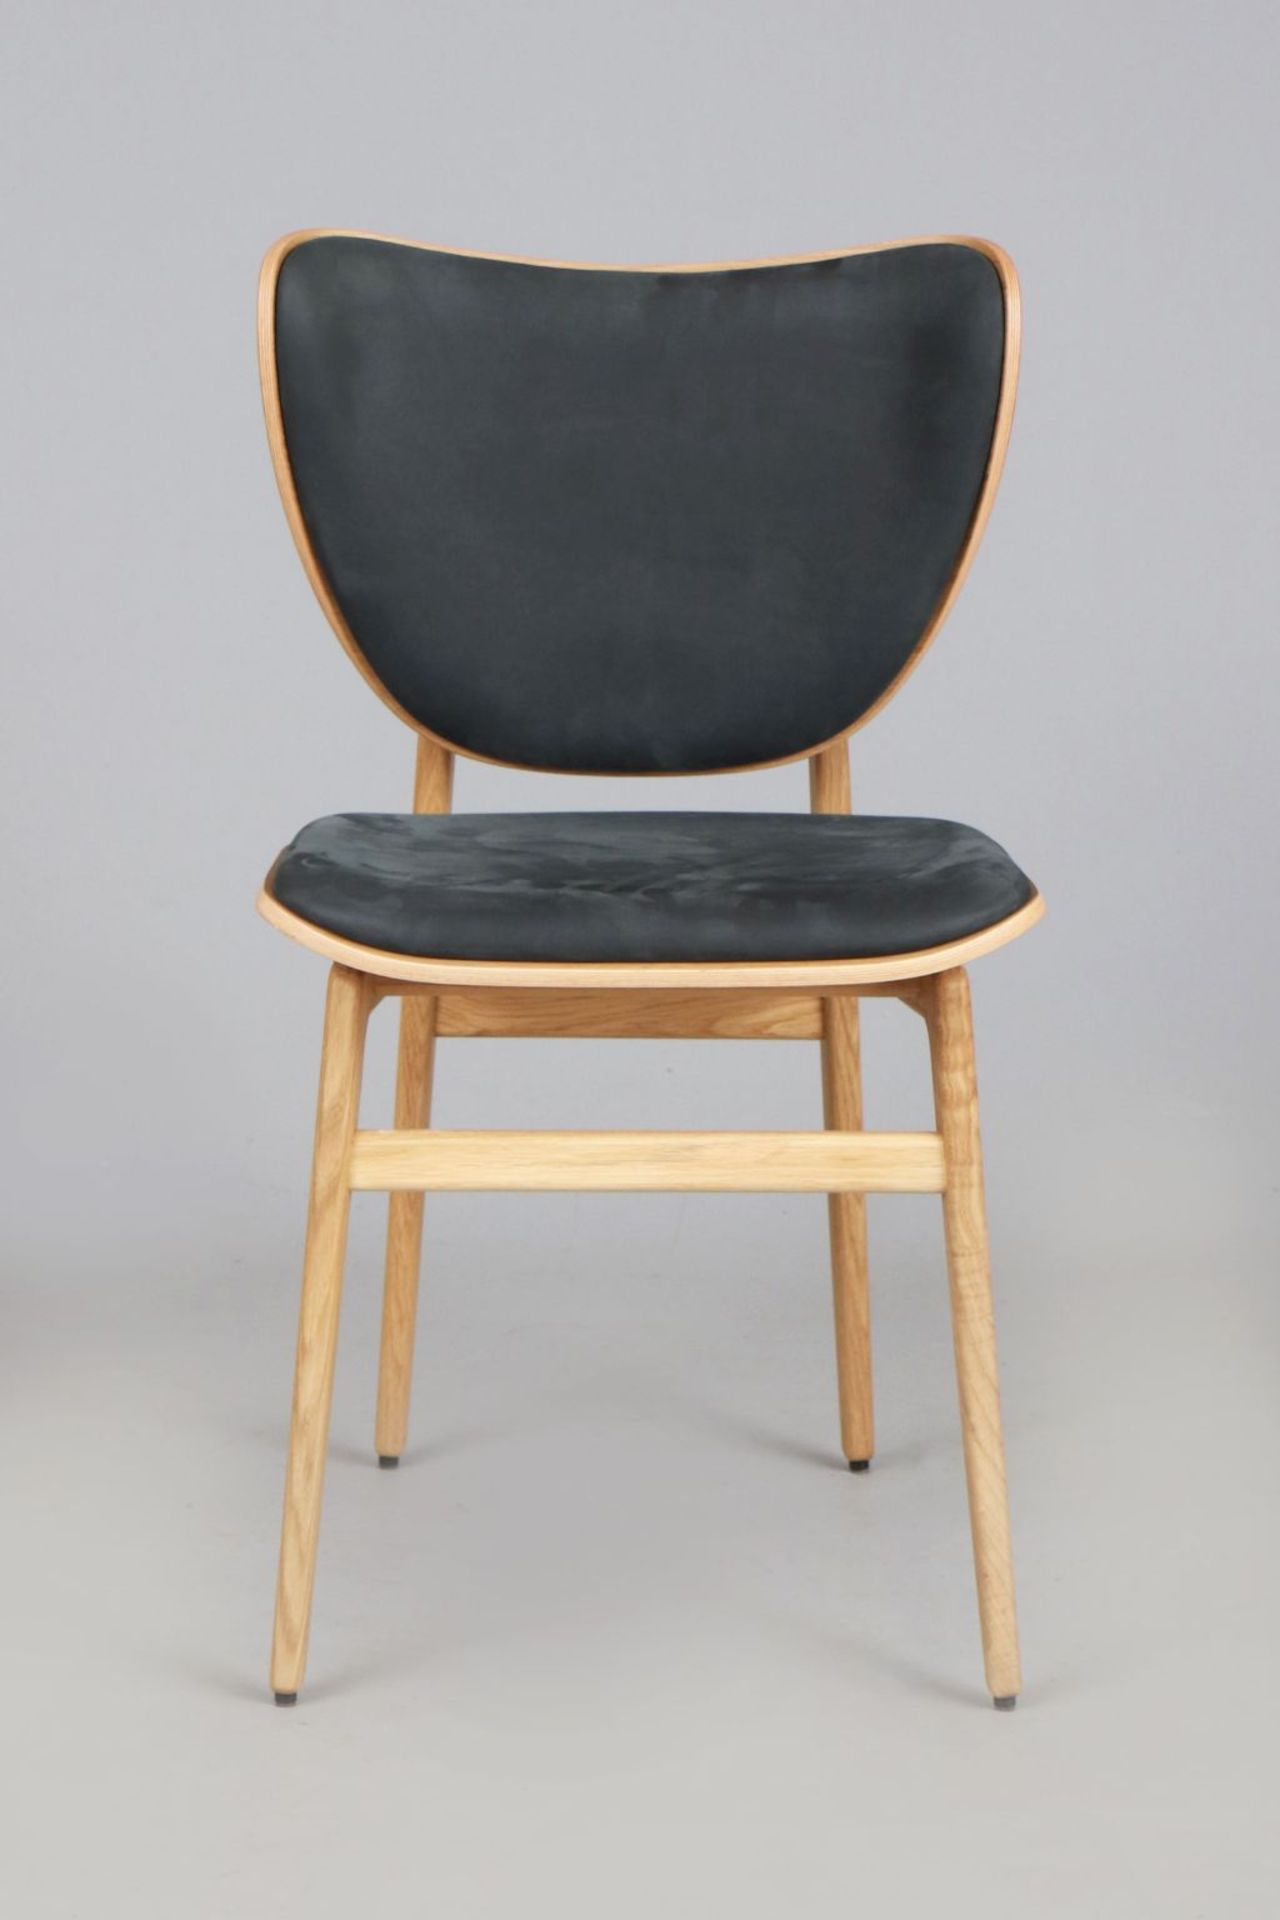 Stuhl (¨Elephant chair¨) im skandinavischen Mid Century Stil